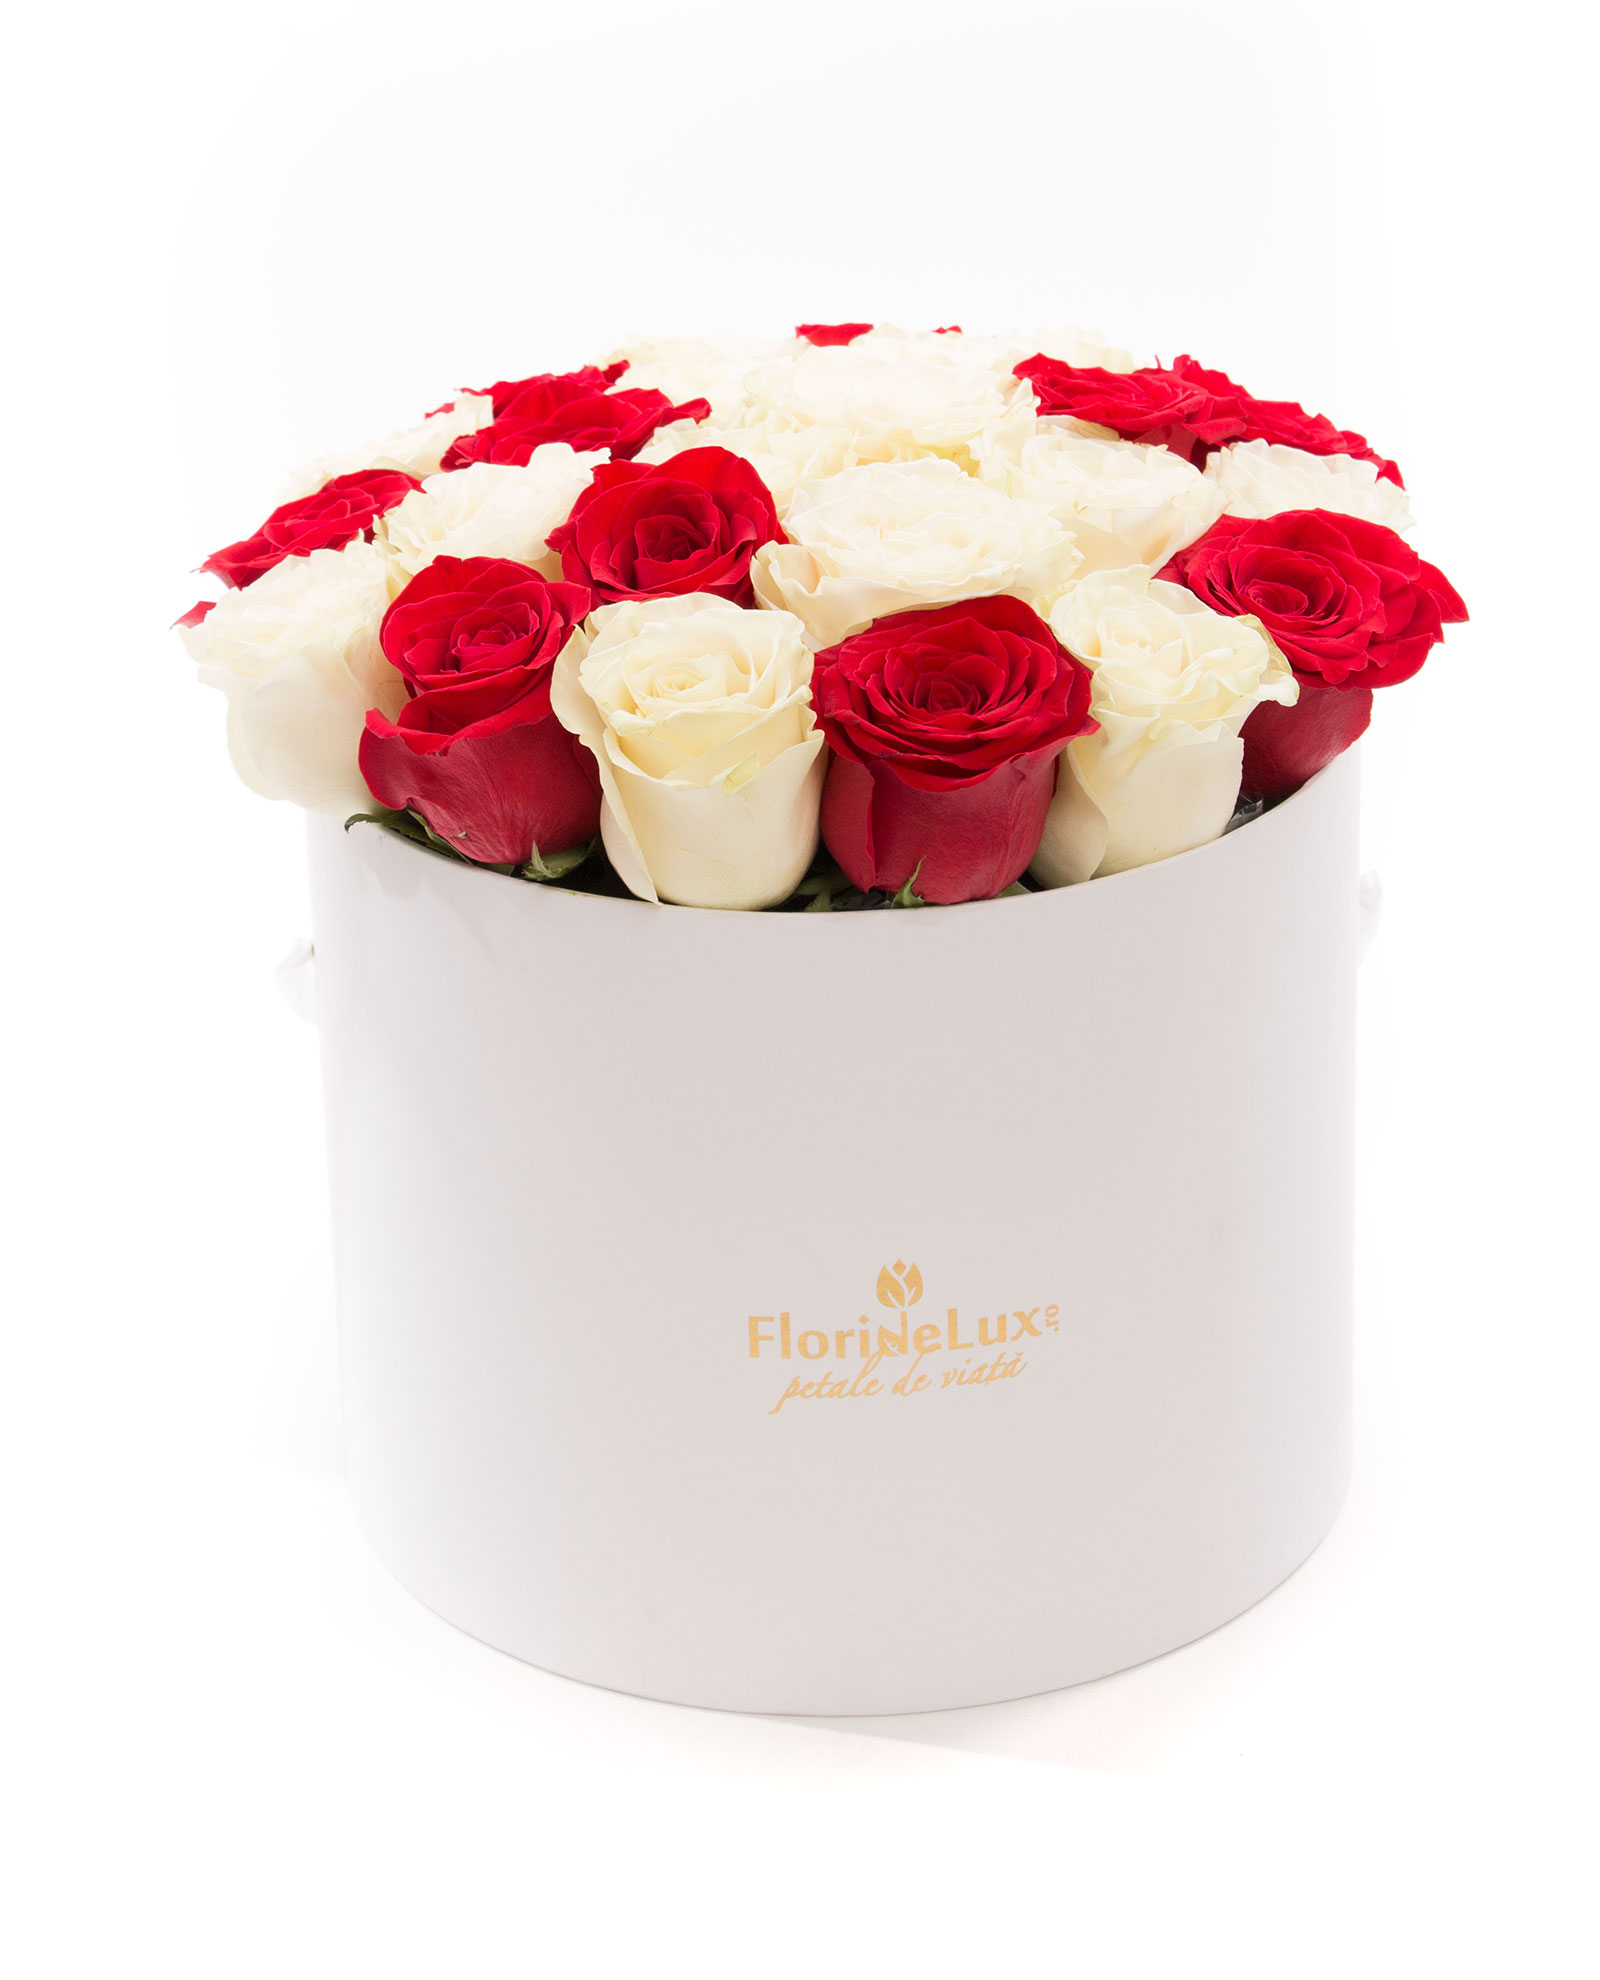 Cutie cu 23 trandafiri albi, rosii si Billecart Salmon